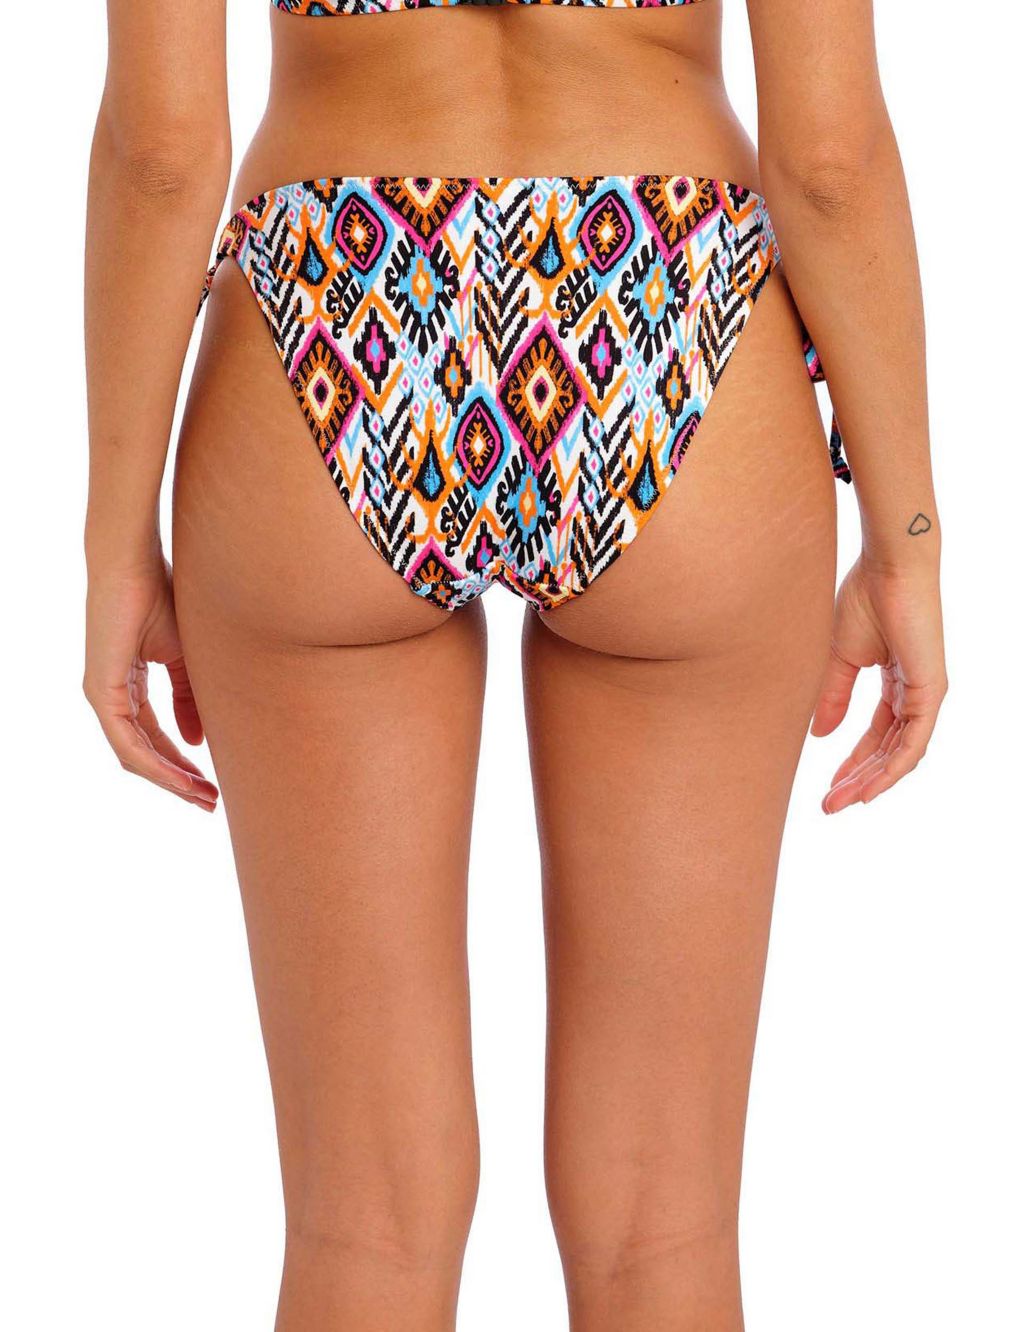 Viva La Fiesta Printed Bikini Bottoms image 5